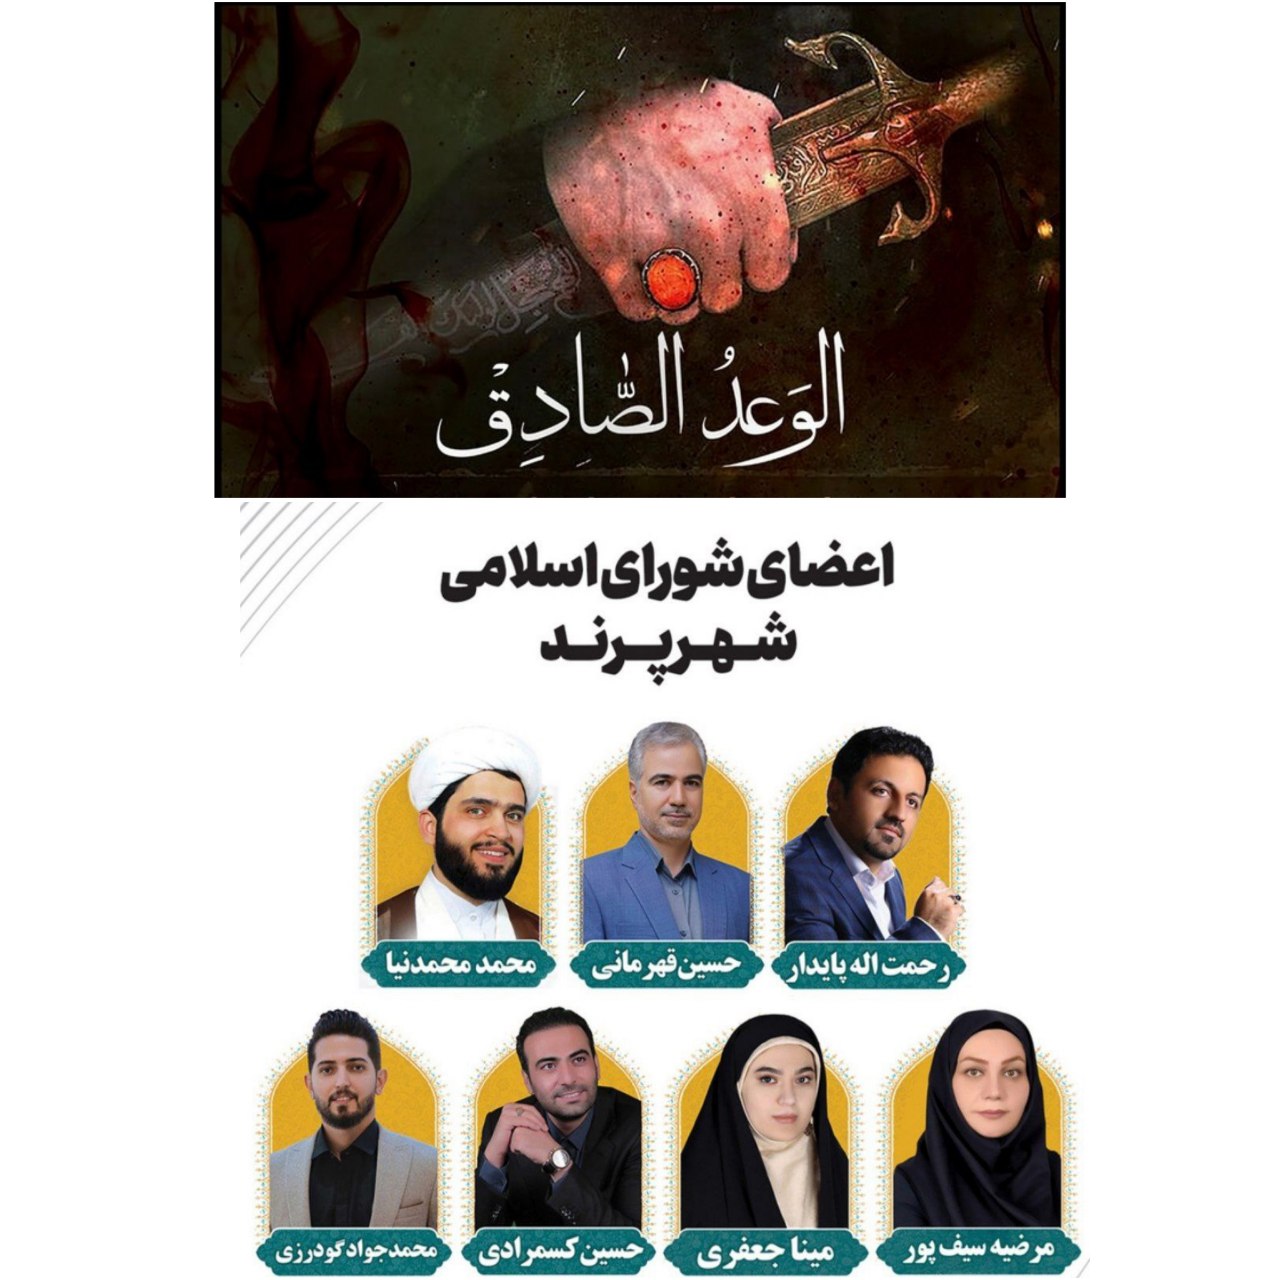 "وعده صادق"؛ پاسخی کوبنده به جنایتکاران رژیم صهیونیستی